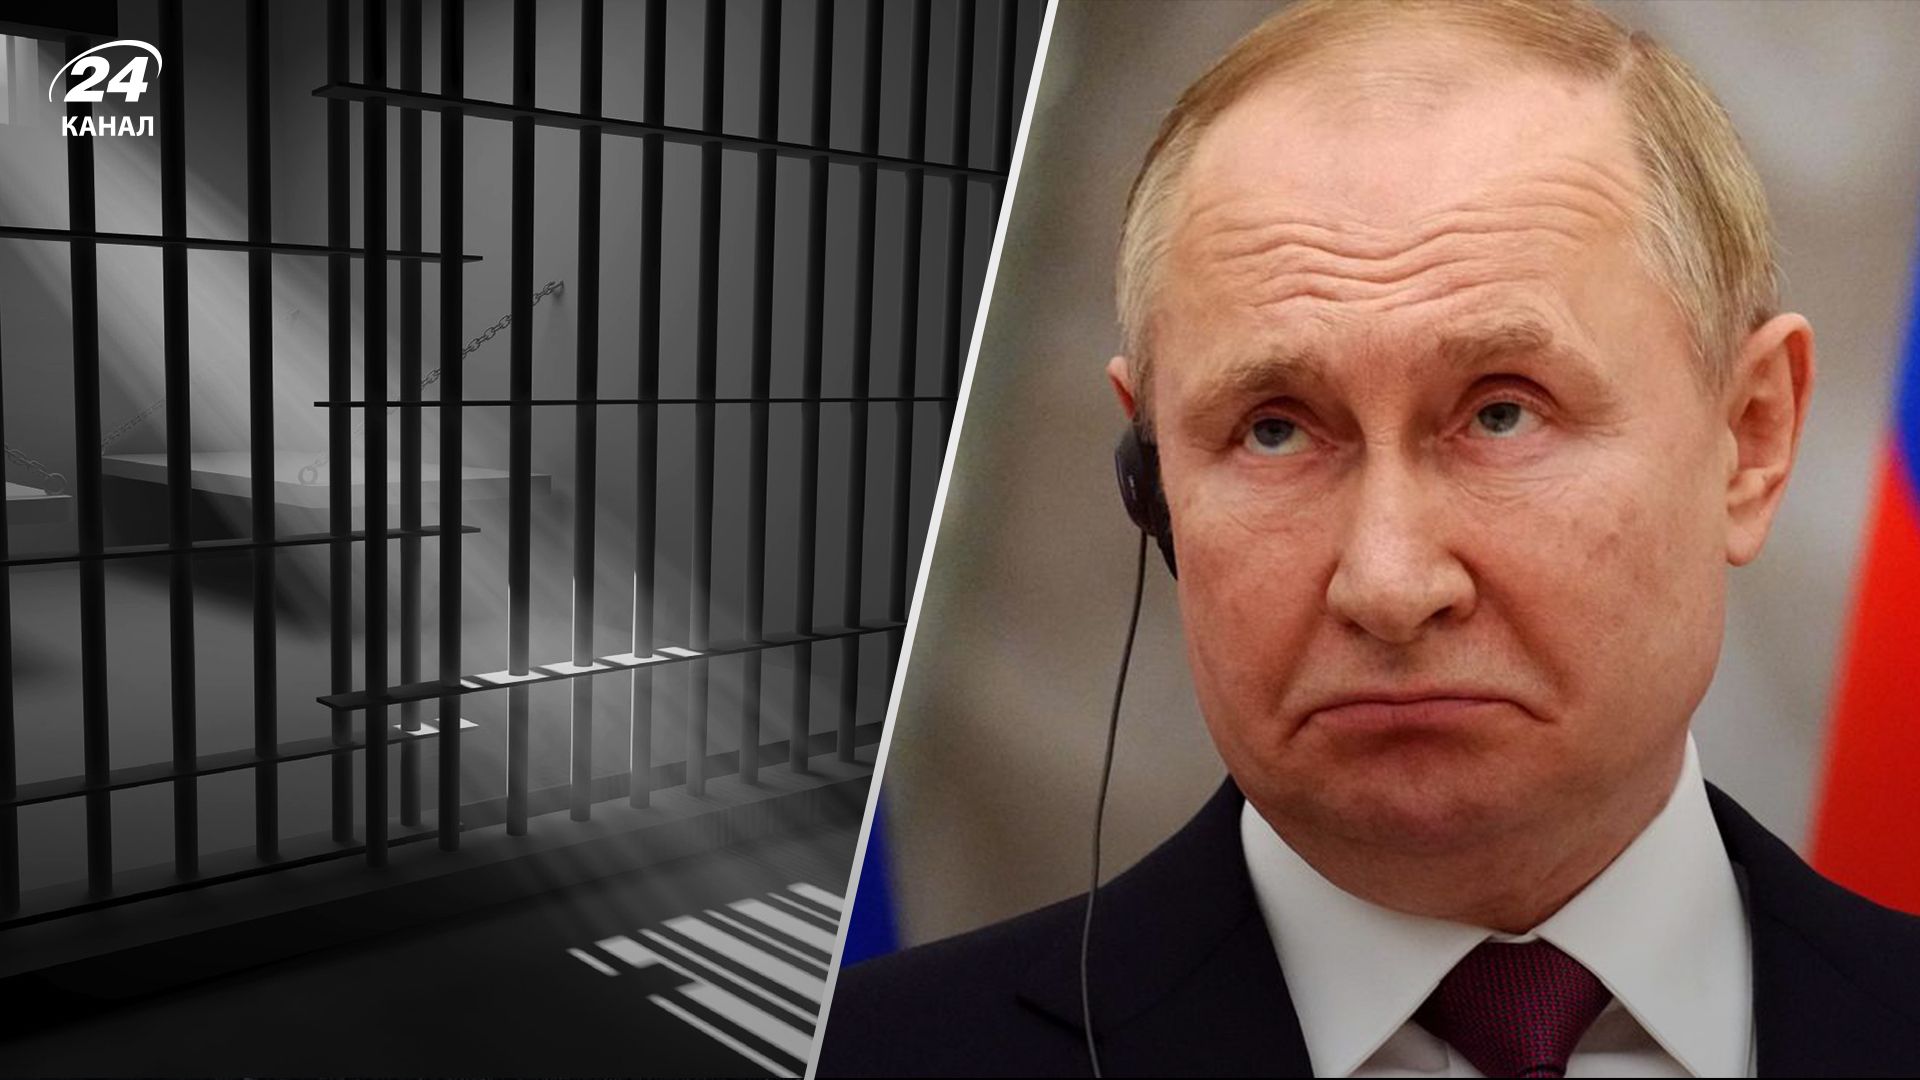 Кто может задержать Путина и как отреагирует Россия: Newsweek смоделировал ситуацию - 24 Канал